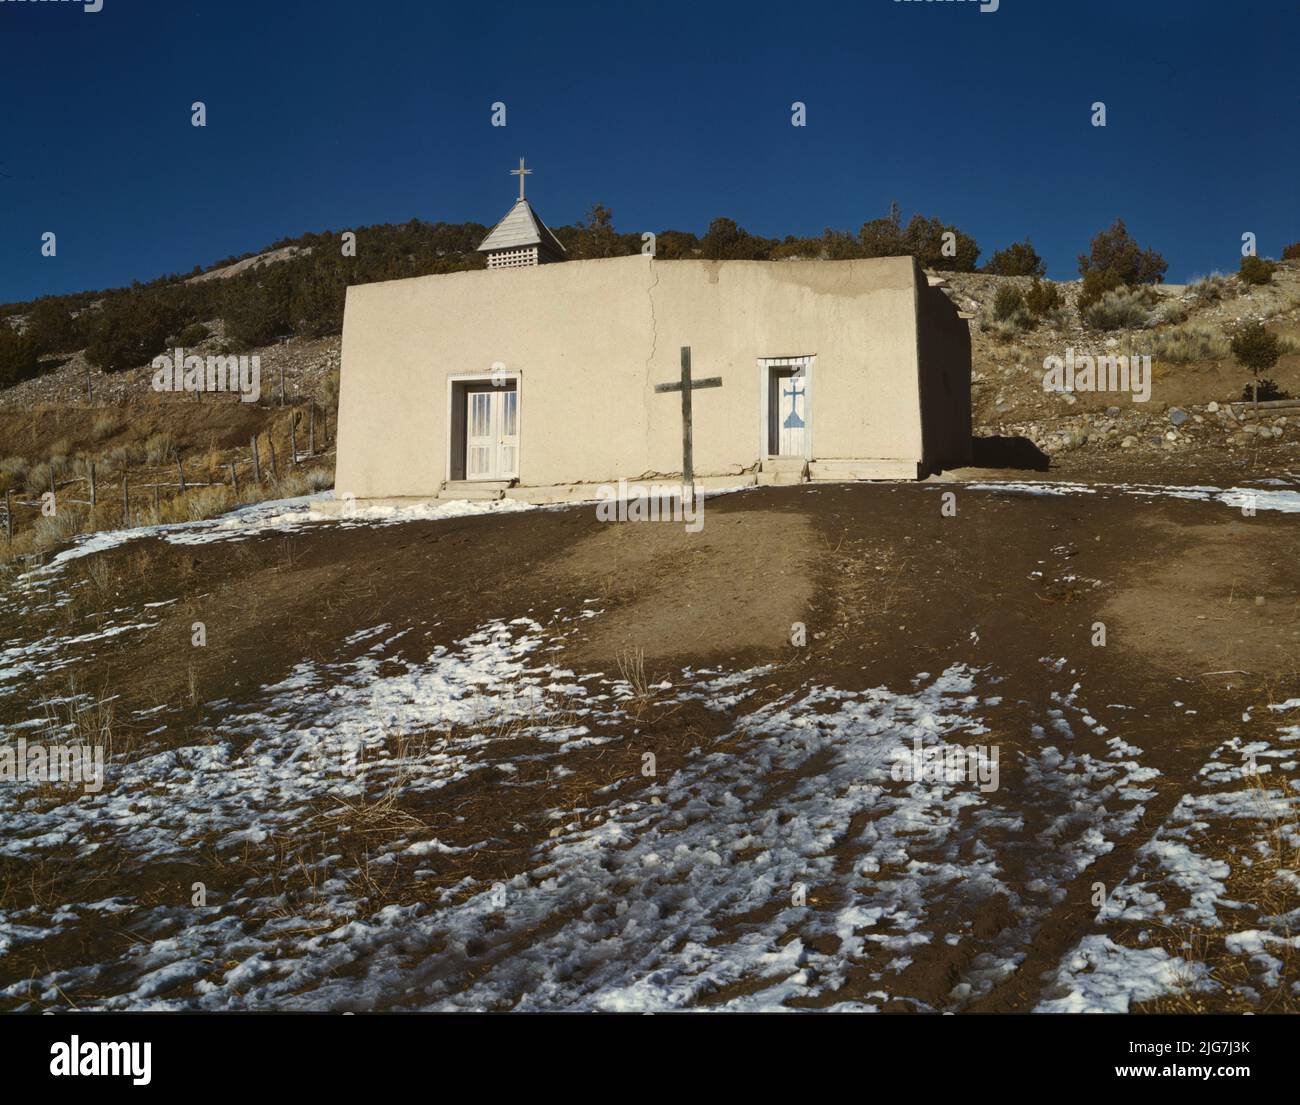 Chapel, Vadito, near Penasco, New Mexico. Stock Photo